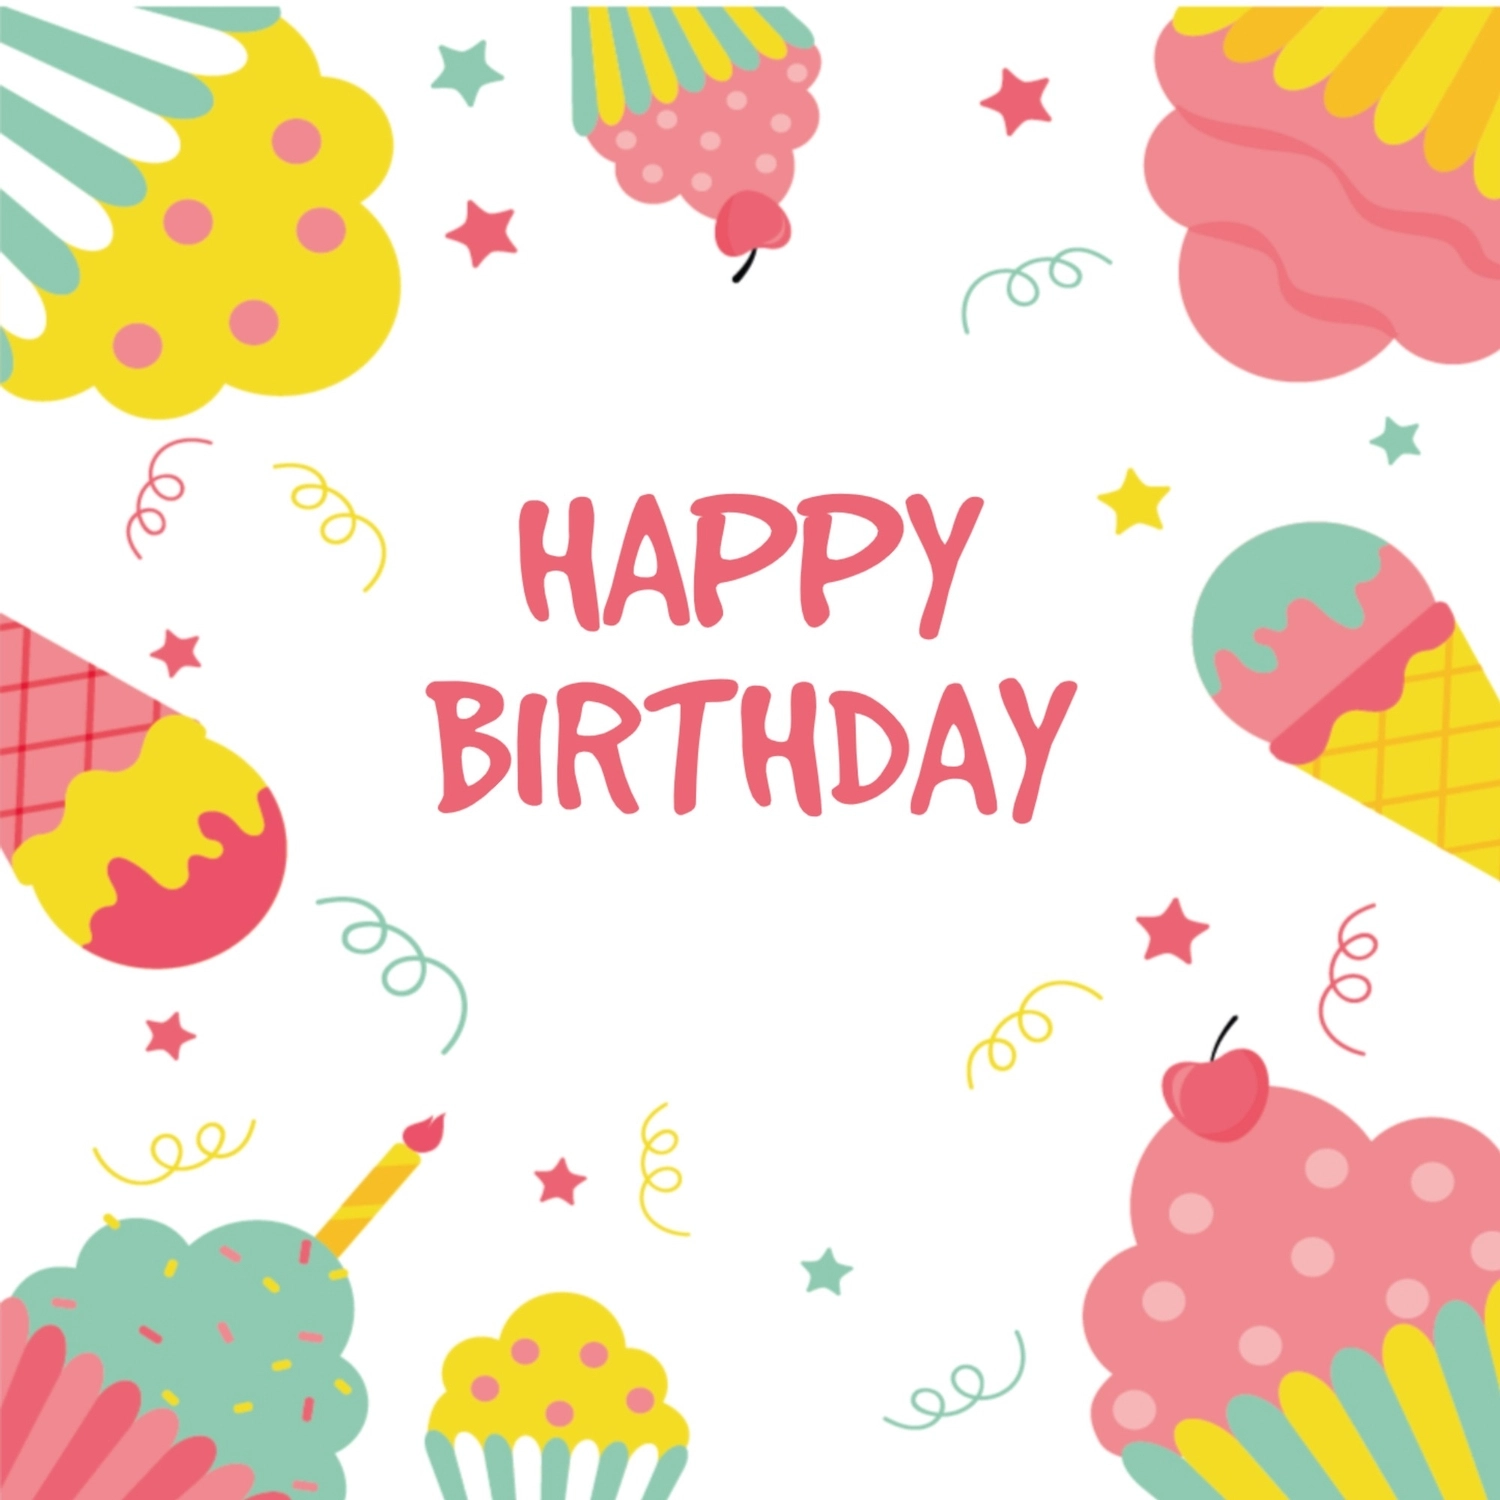 誕生日カード　アイスクリームとカップケーキ, カップケーキ, バースデーカード, 作成, 誕生日カードテンプレート